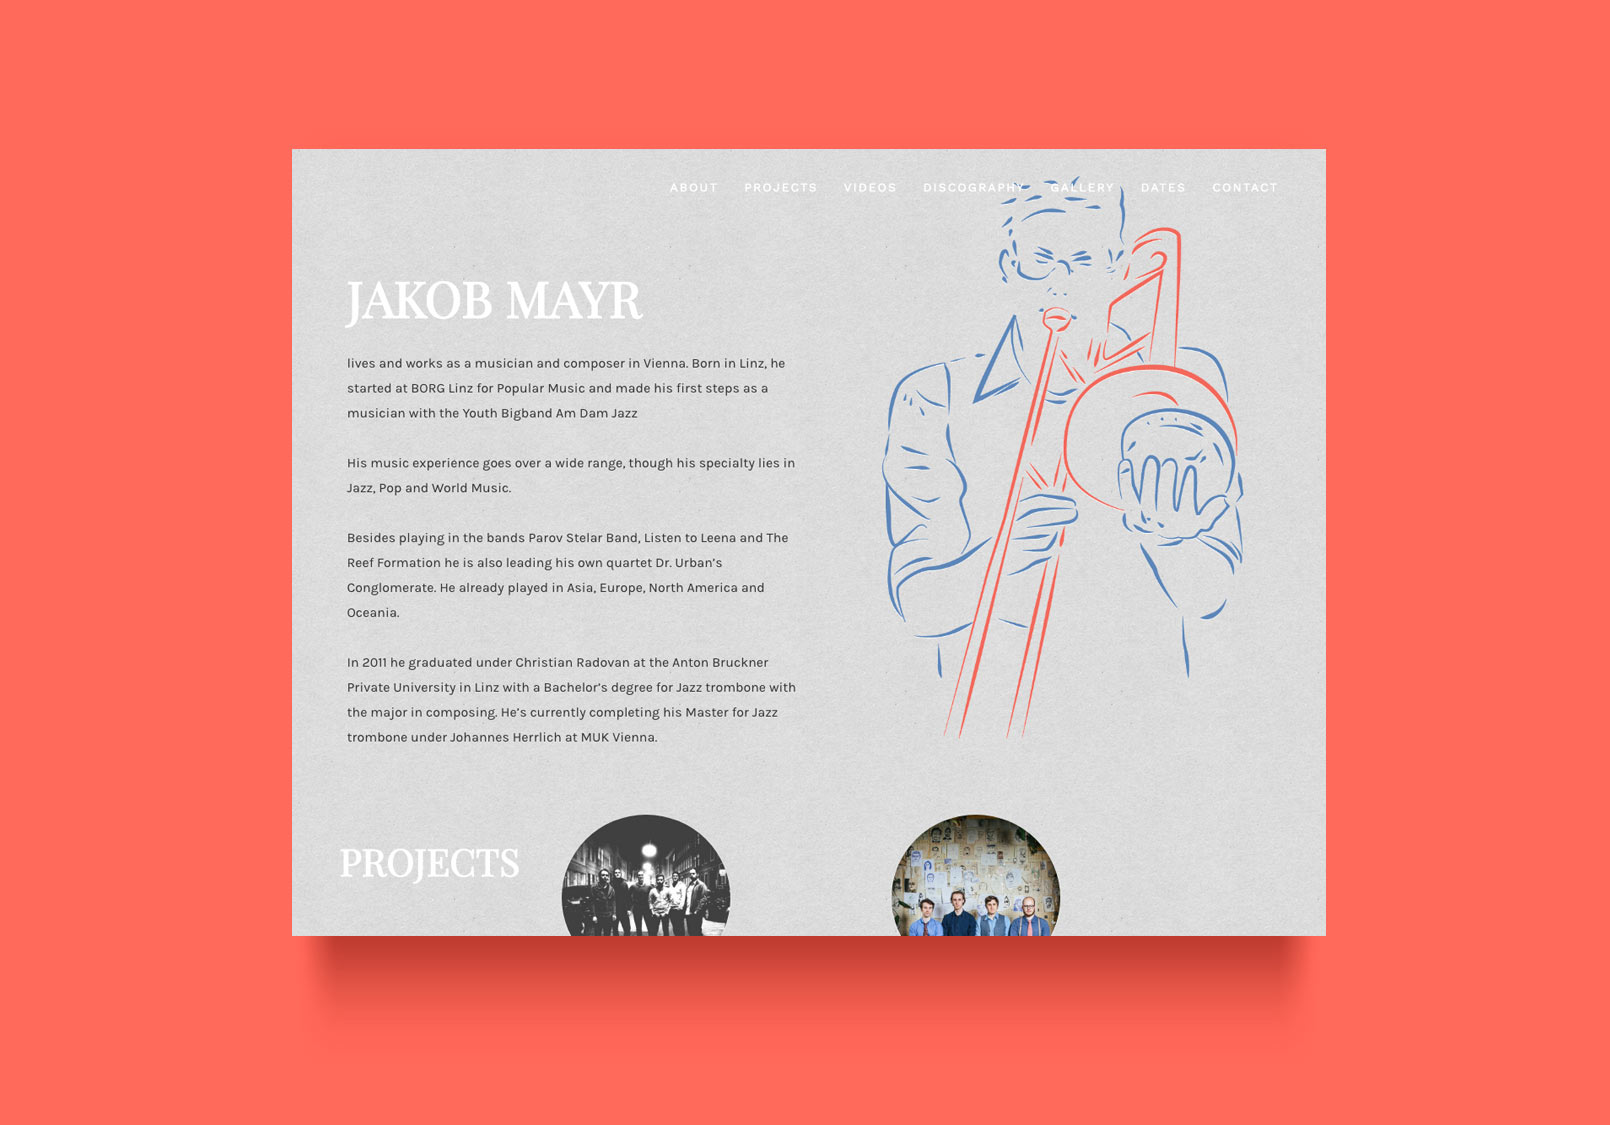 Webdesign für den Posaunisten Jakob Mayr, der unter anderem bei der Band Parov Stelar spielt